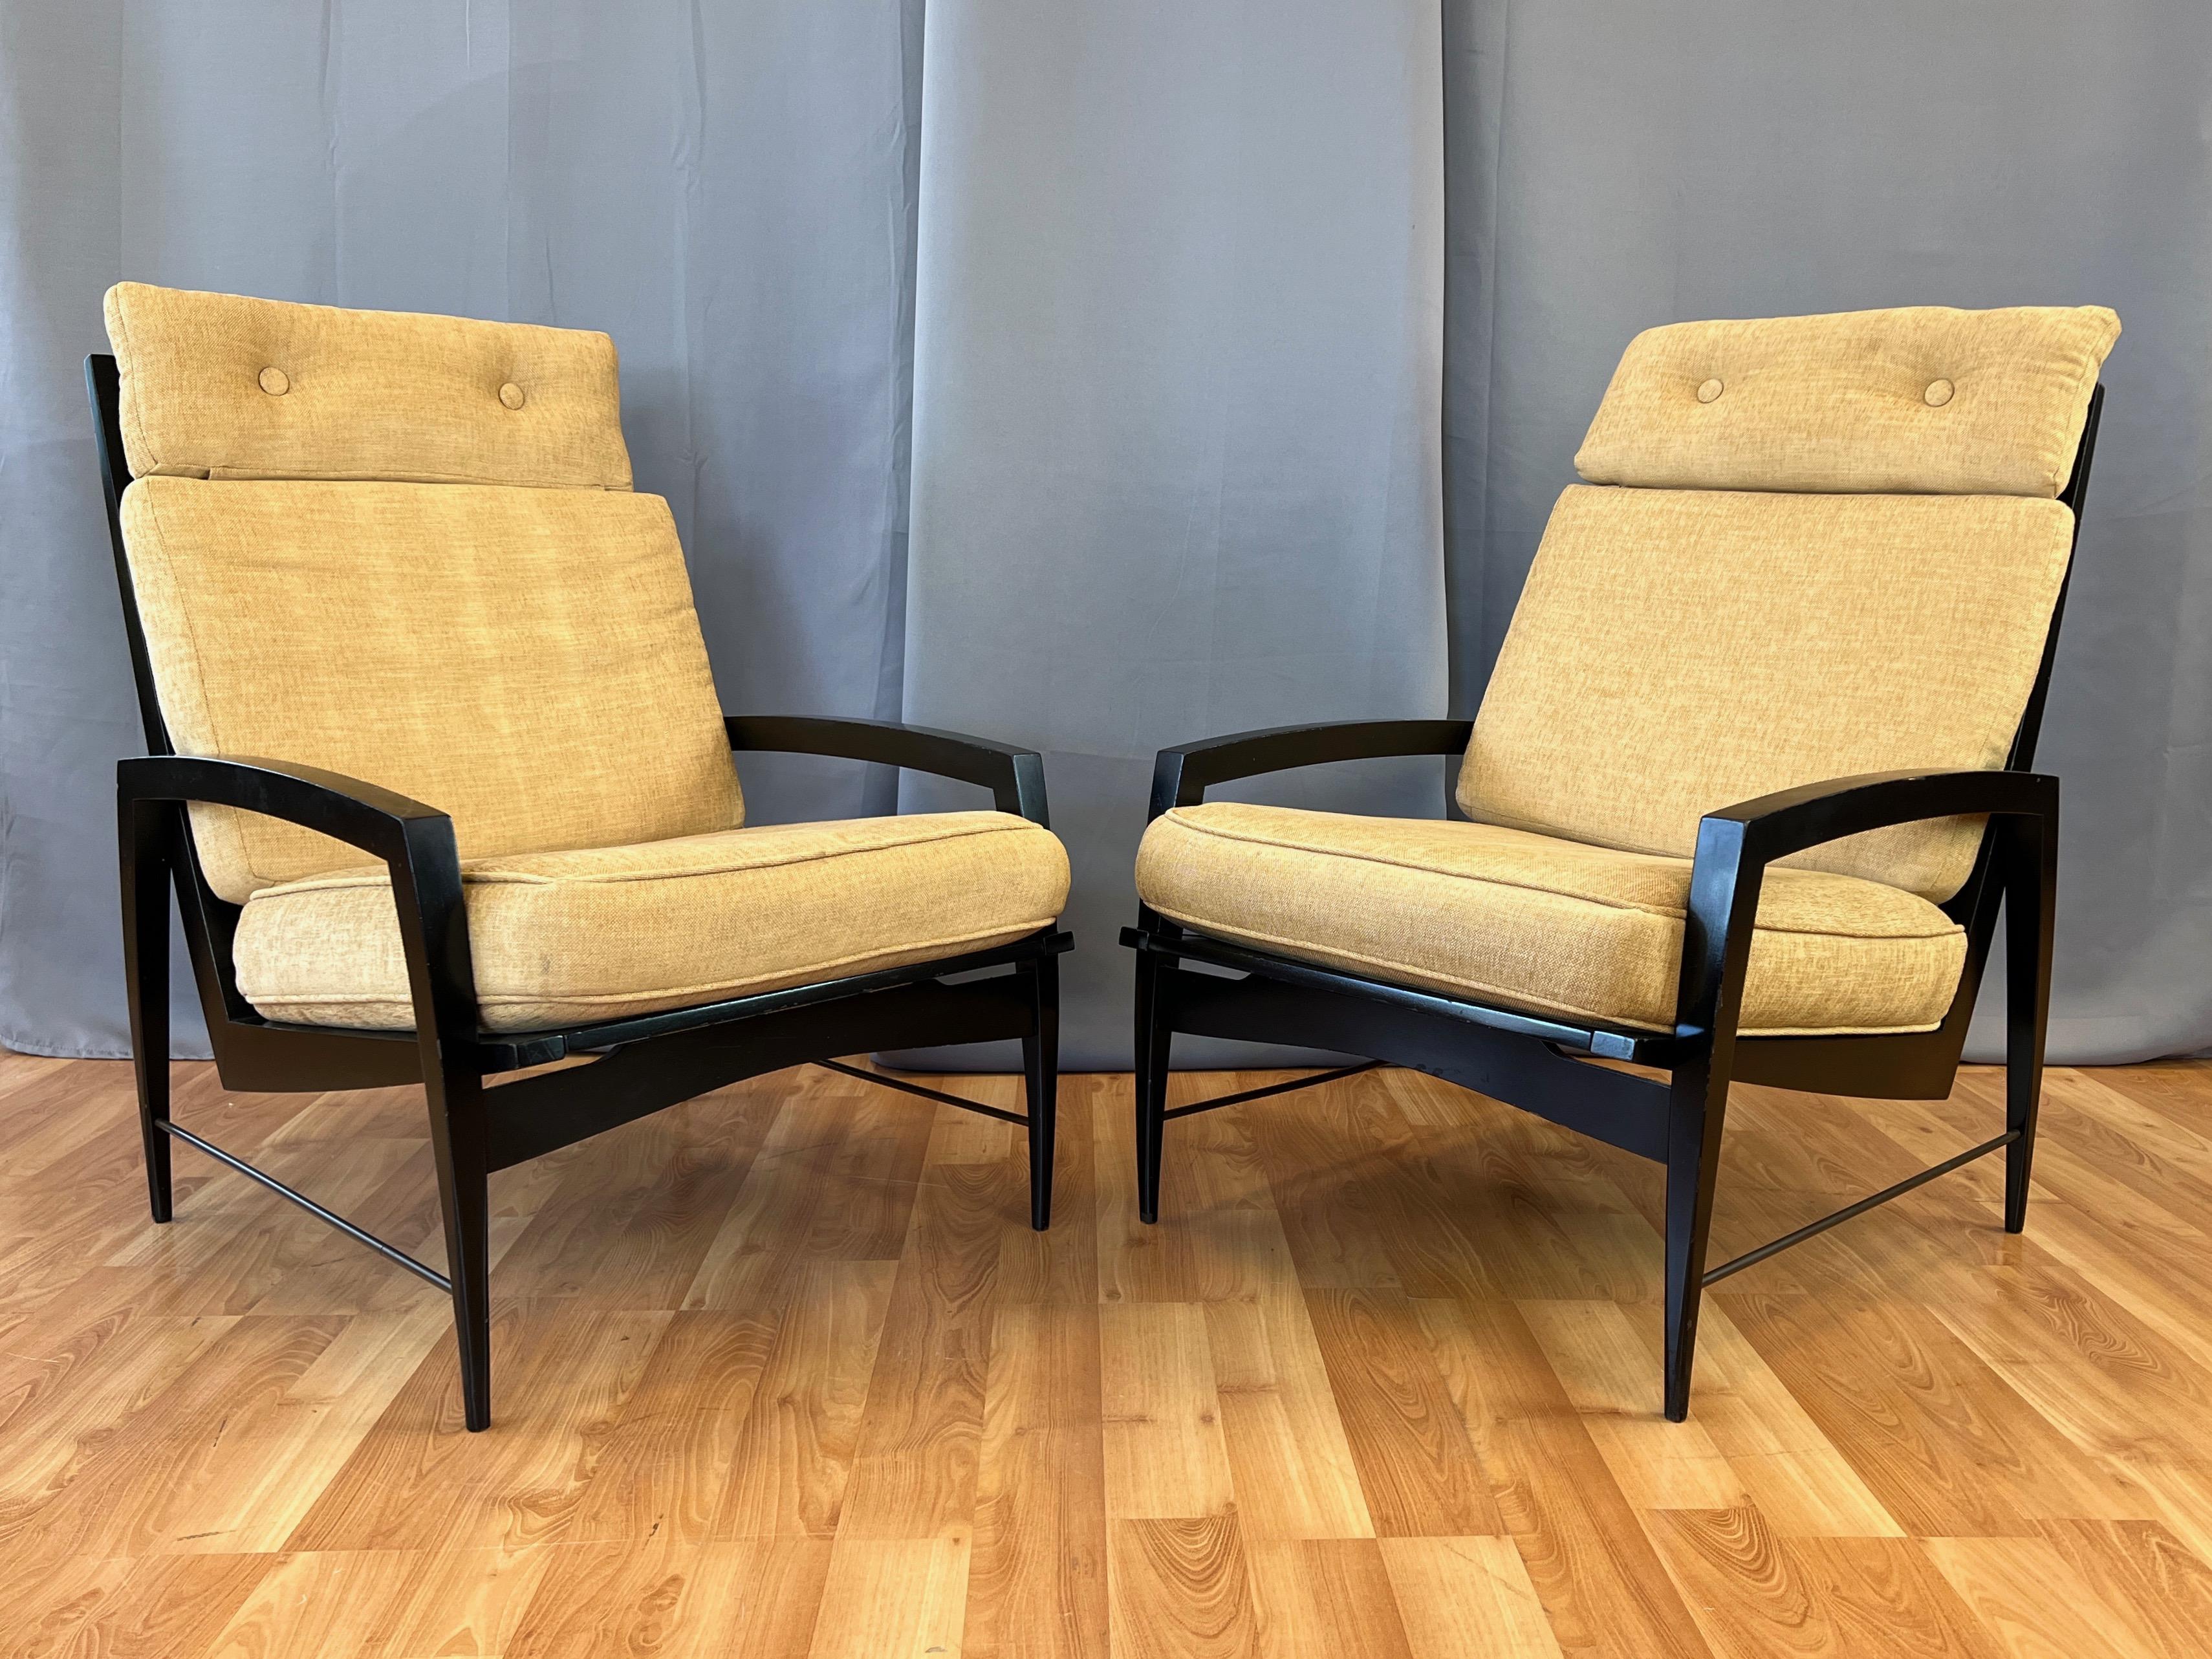  rare paire de chaises de salon à haut dossier laqué noir des années 1950 par Dan Johnson pour Selig.

Les lignes courbes opposées, élégamment effilées, présentent une esthétique moderne du milieu du siècle, à la fois distinctive et intemporelle. Le